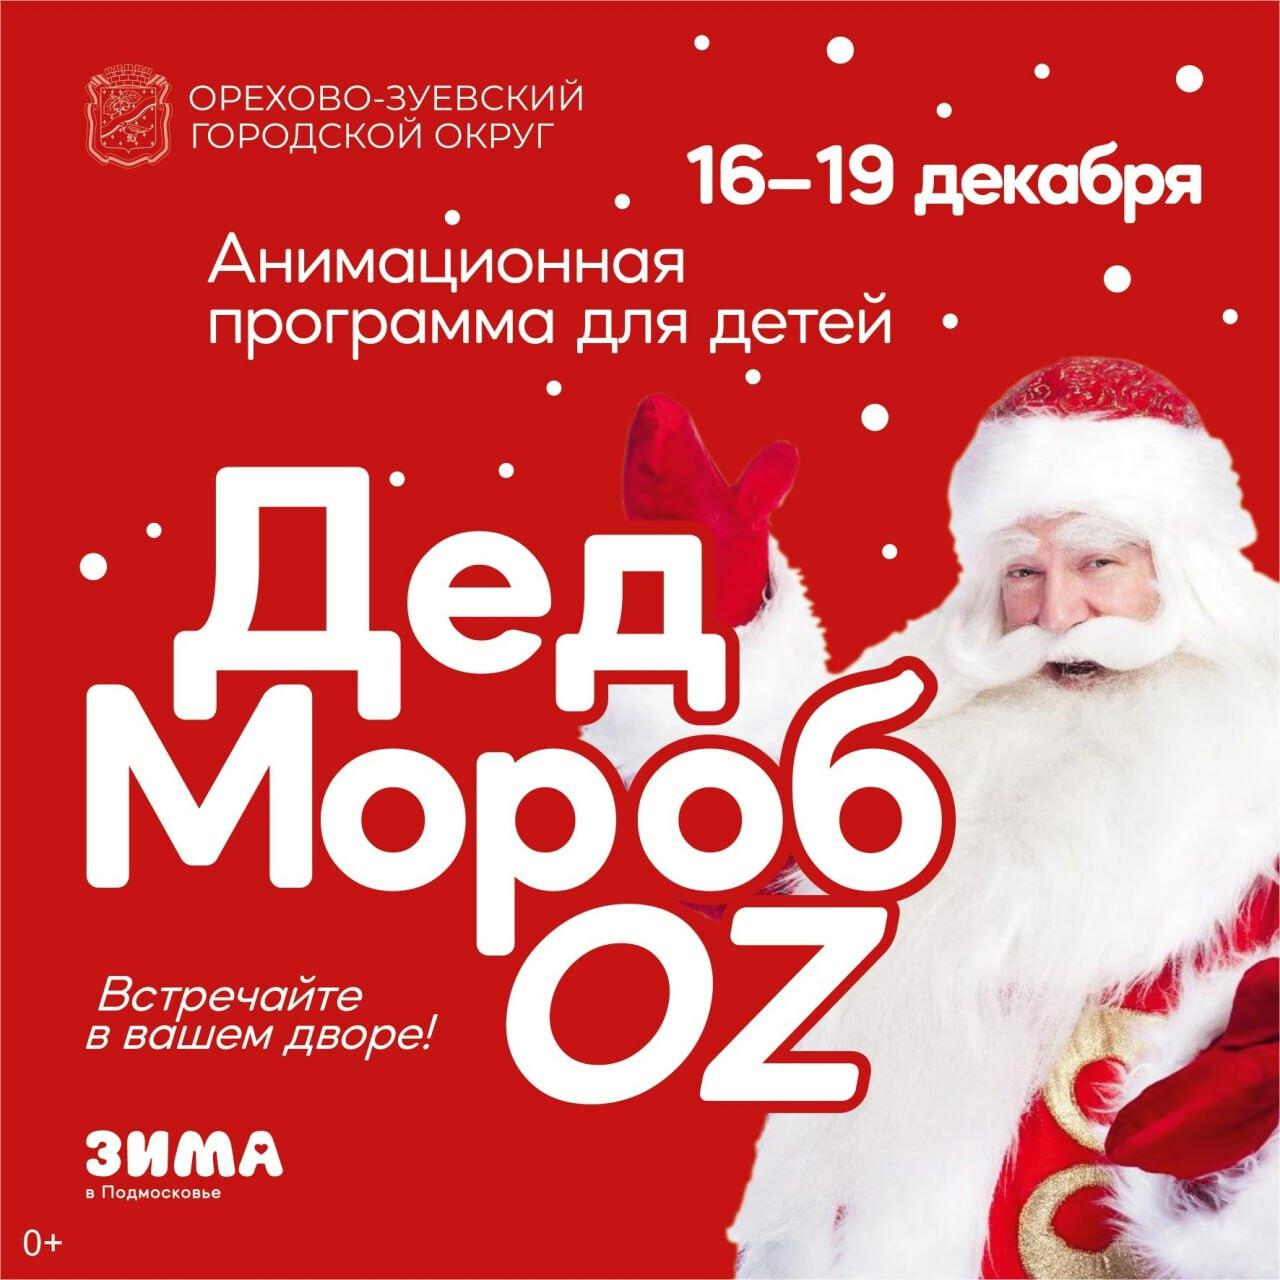 Дед МоробOZ отправляется в путь по Орехово-Зуевскому округу